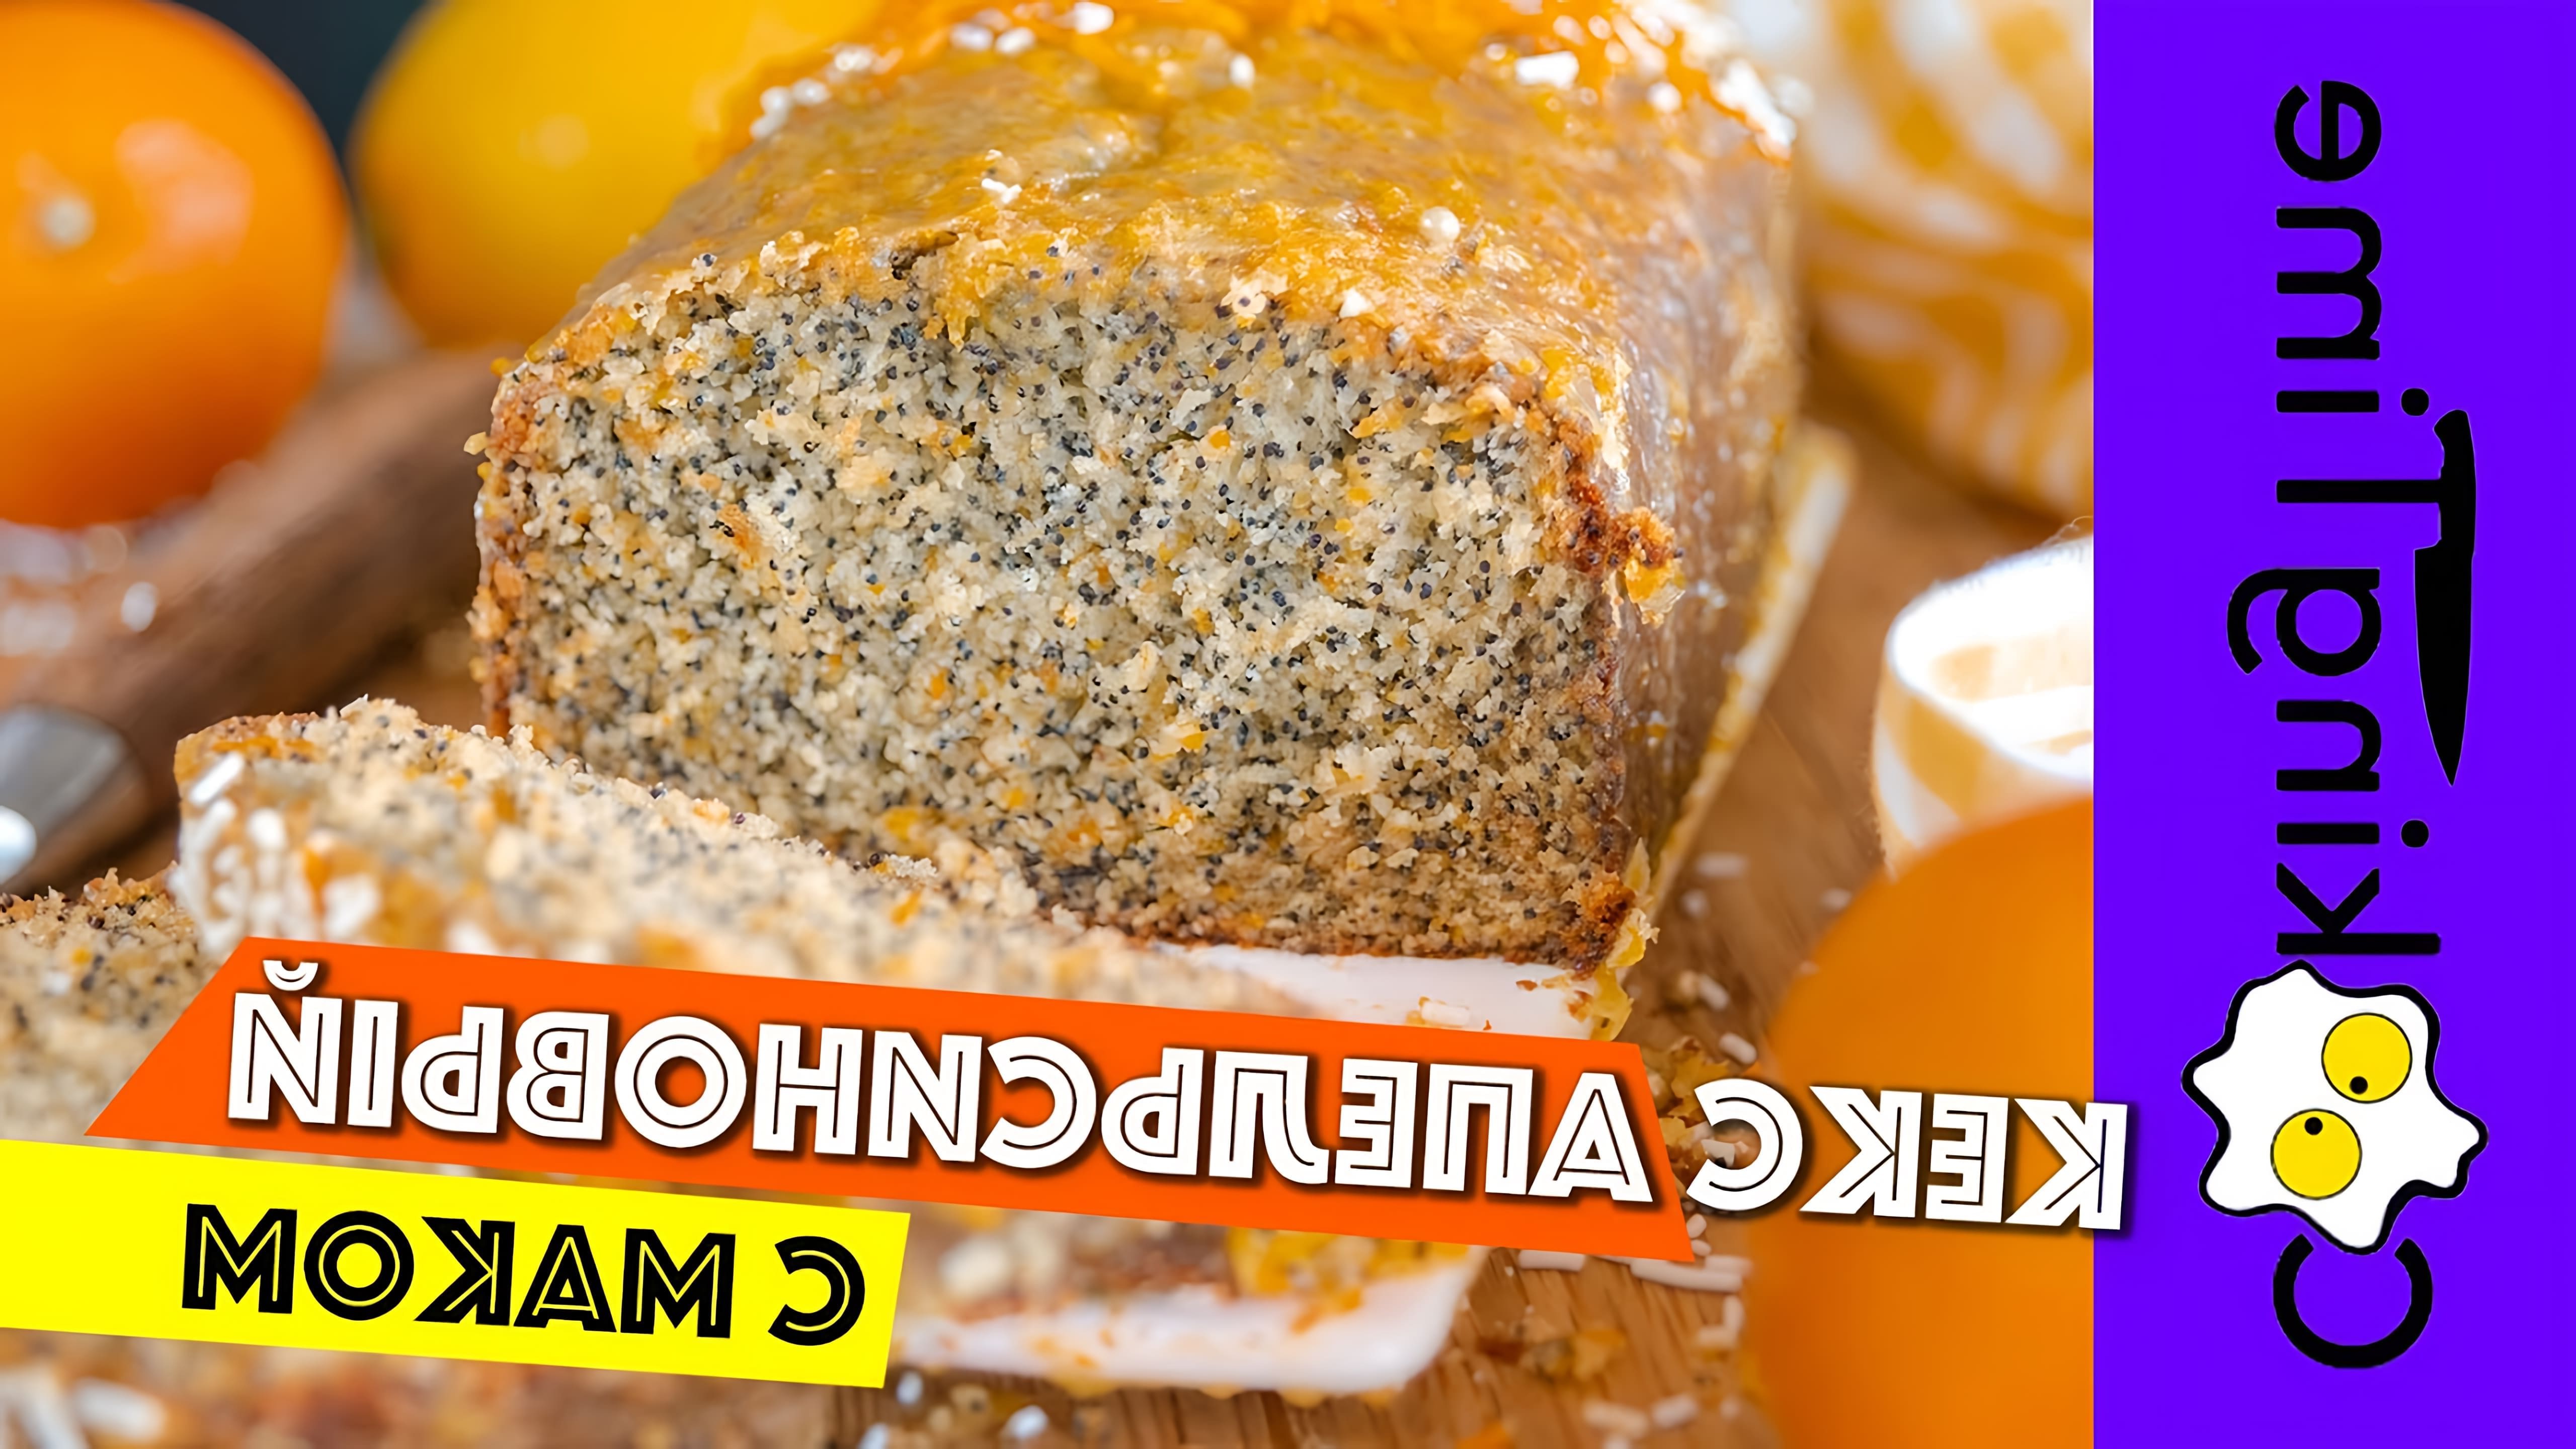 В этом видео демонстрируется рецепт апельсинового кекса с маком